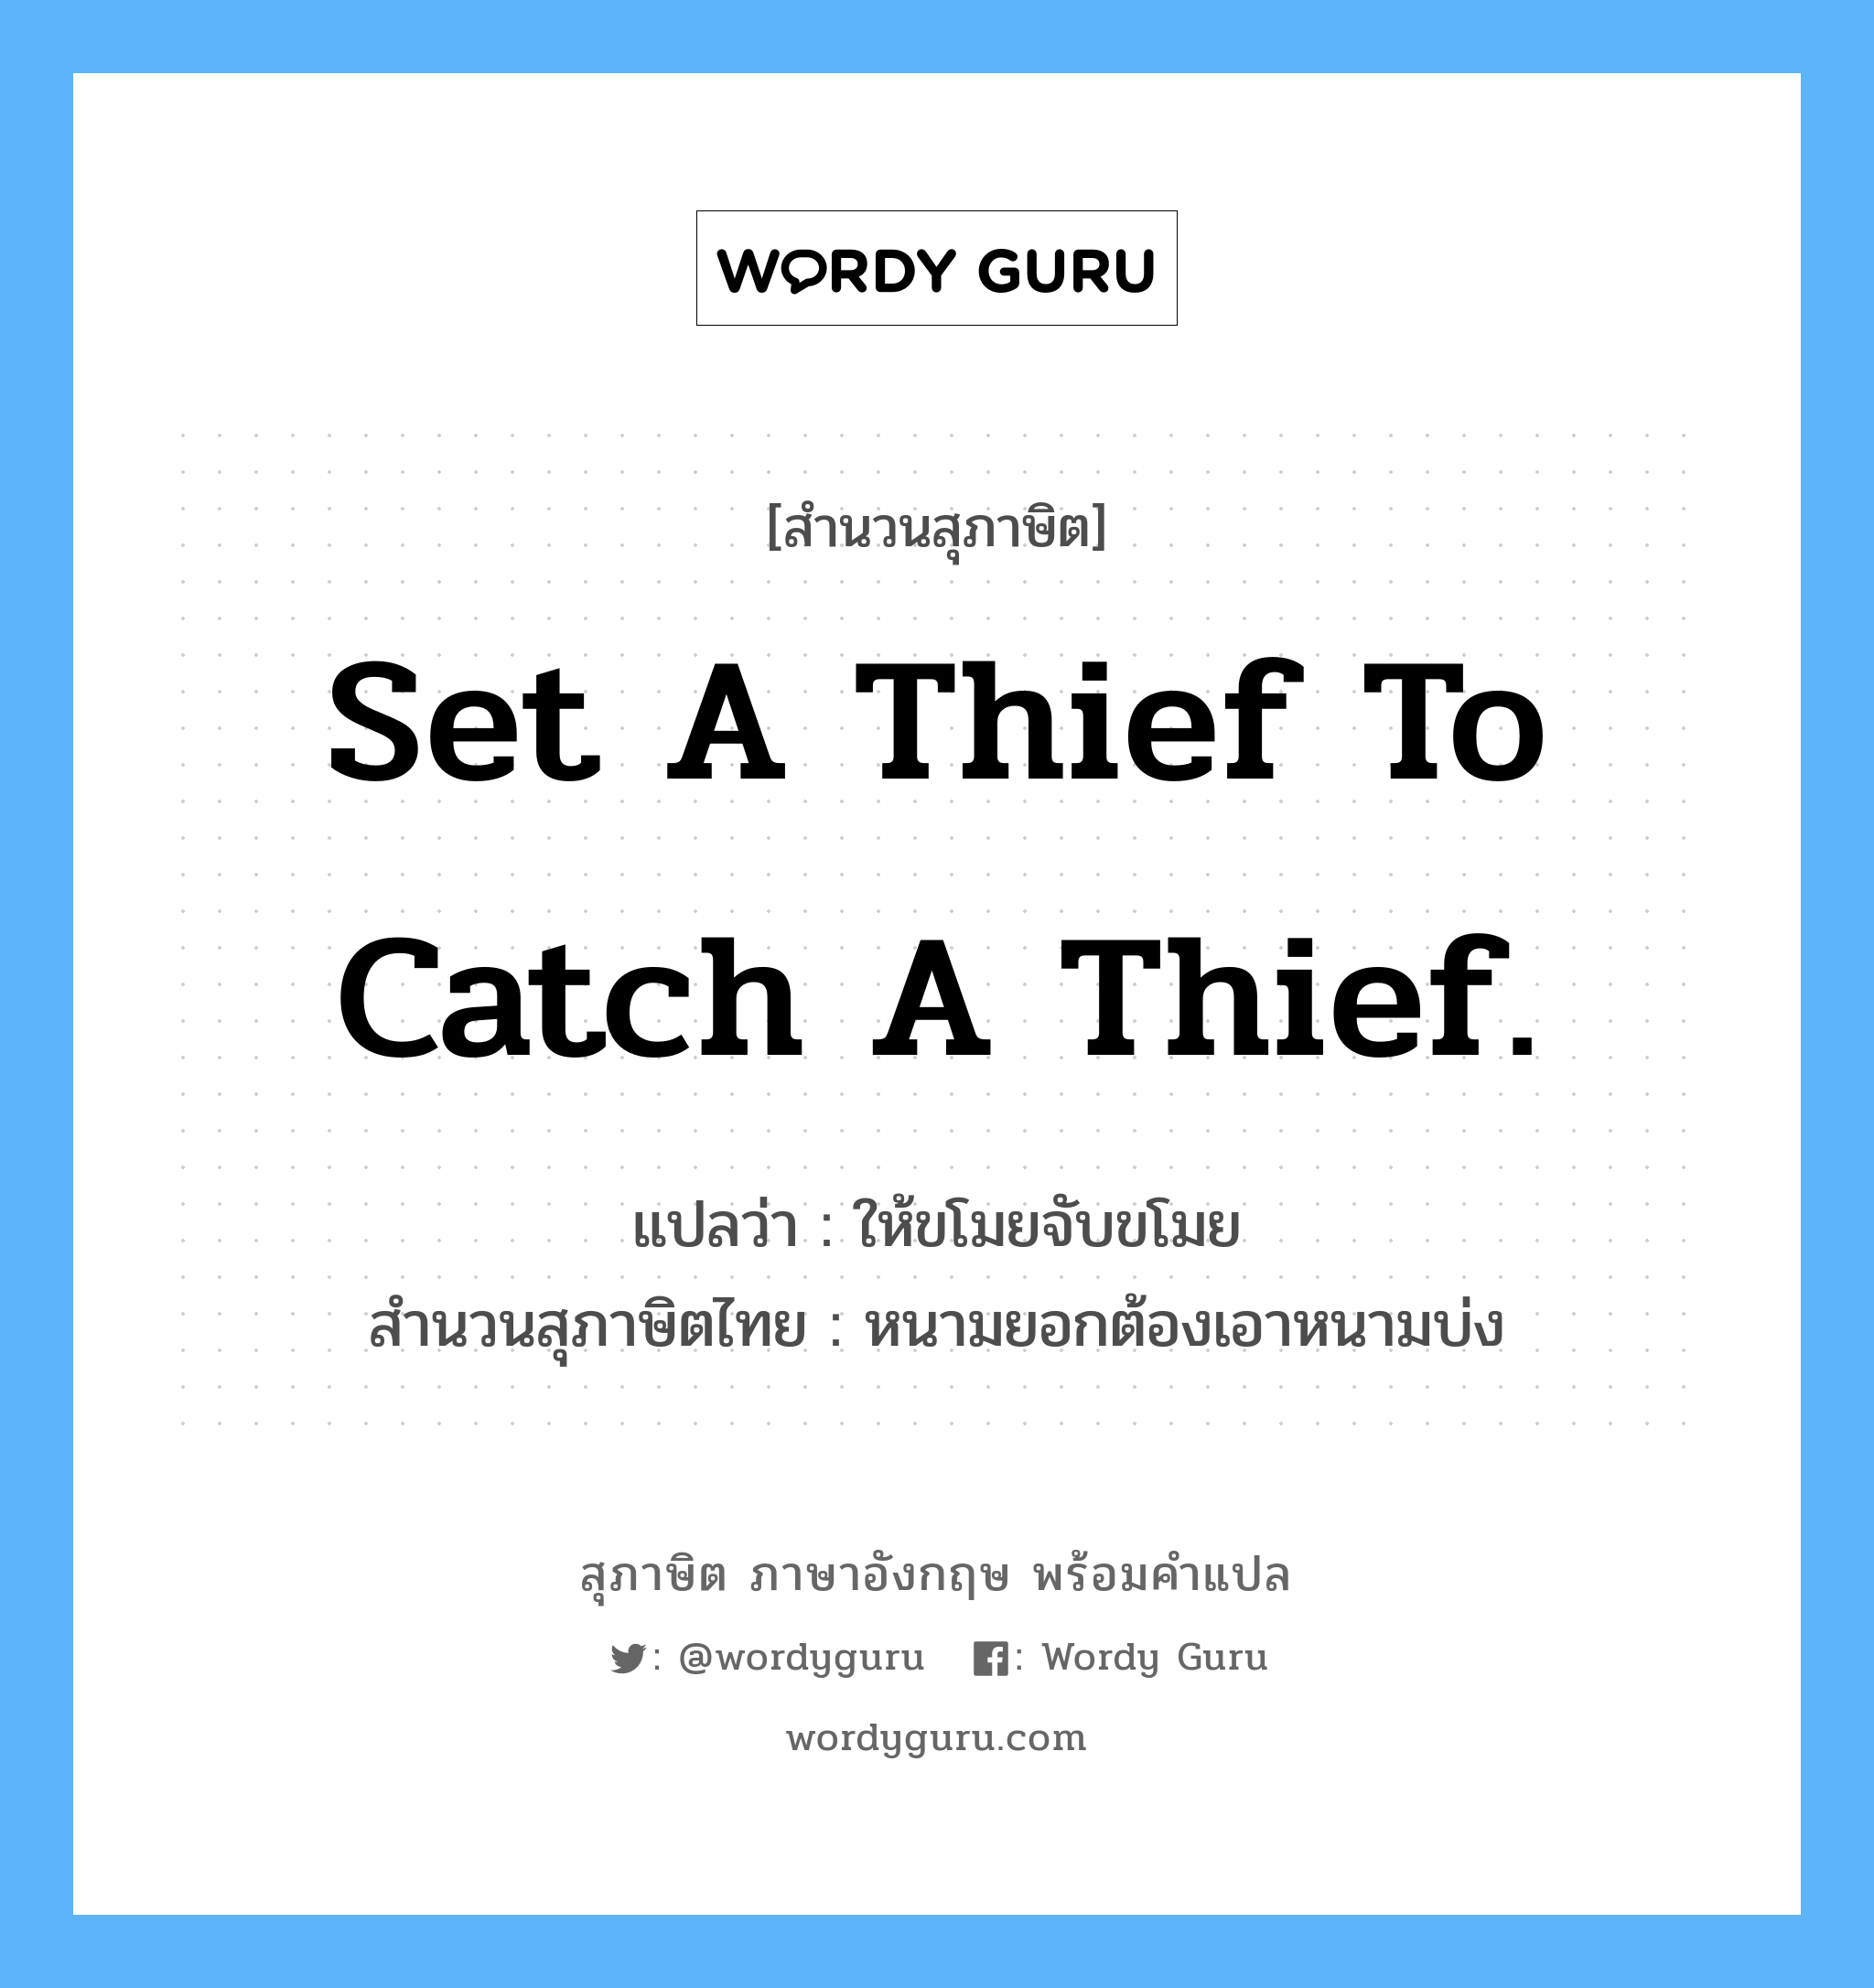 Set a thief to catch a thief.